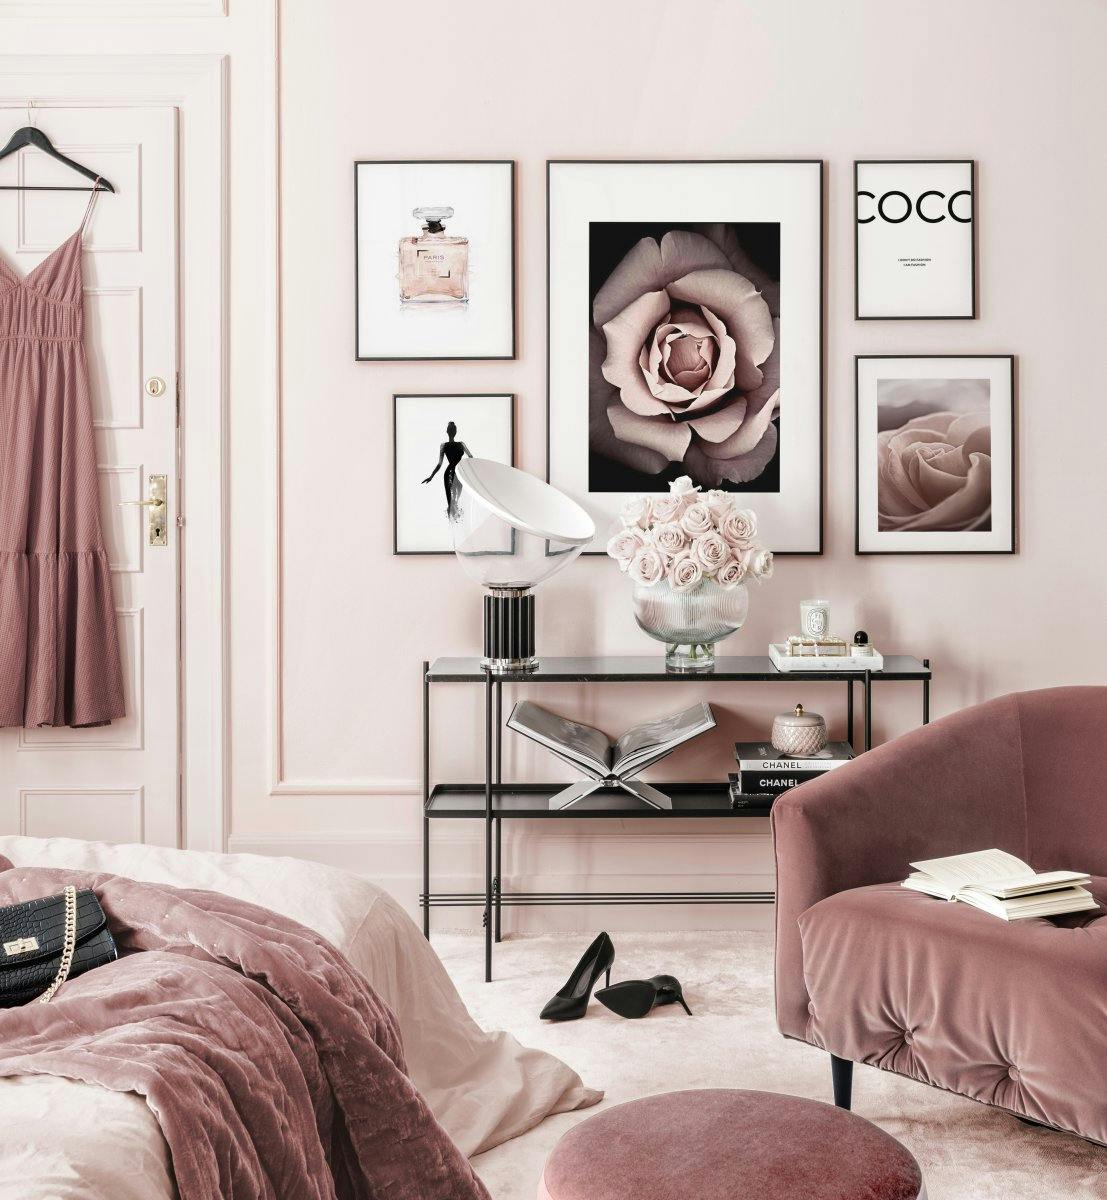 Modna galeria obrazow rozowa sypialnia plakat Kwiaty czarne debowe ramki